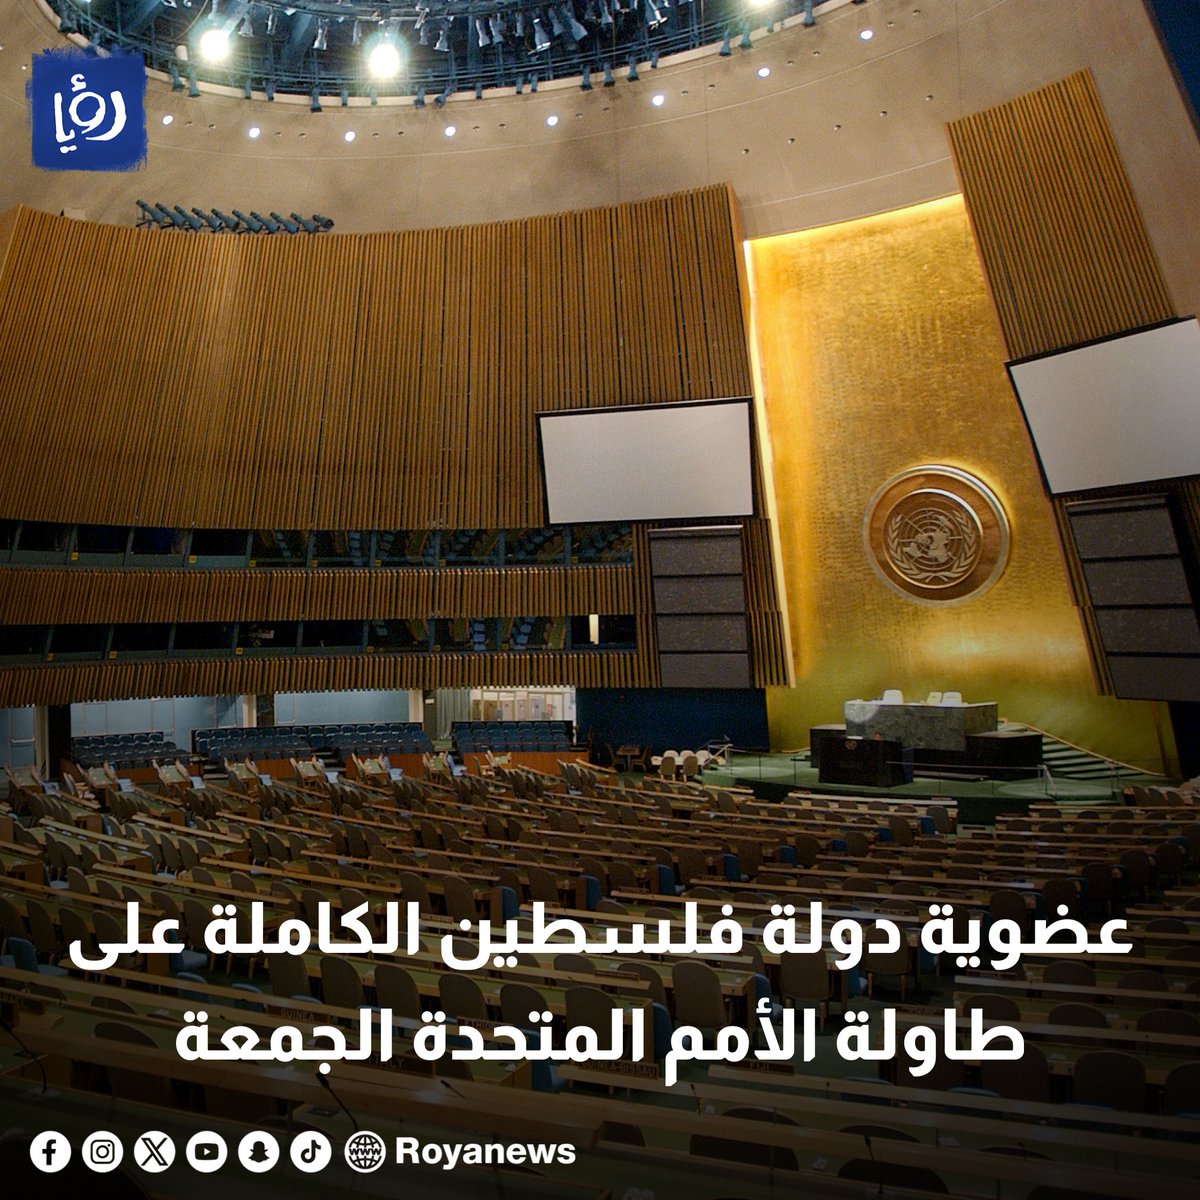 عضوية دولة فلسطين الكاملة على طاولة الأمم المتحدة الجمعة royanews.tv/news/326462 #رؤيا_الإخباري #فلسطين #الأمم_المتحدة